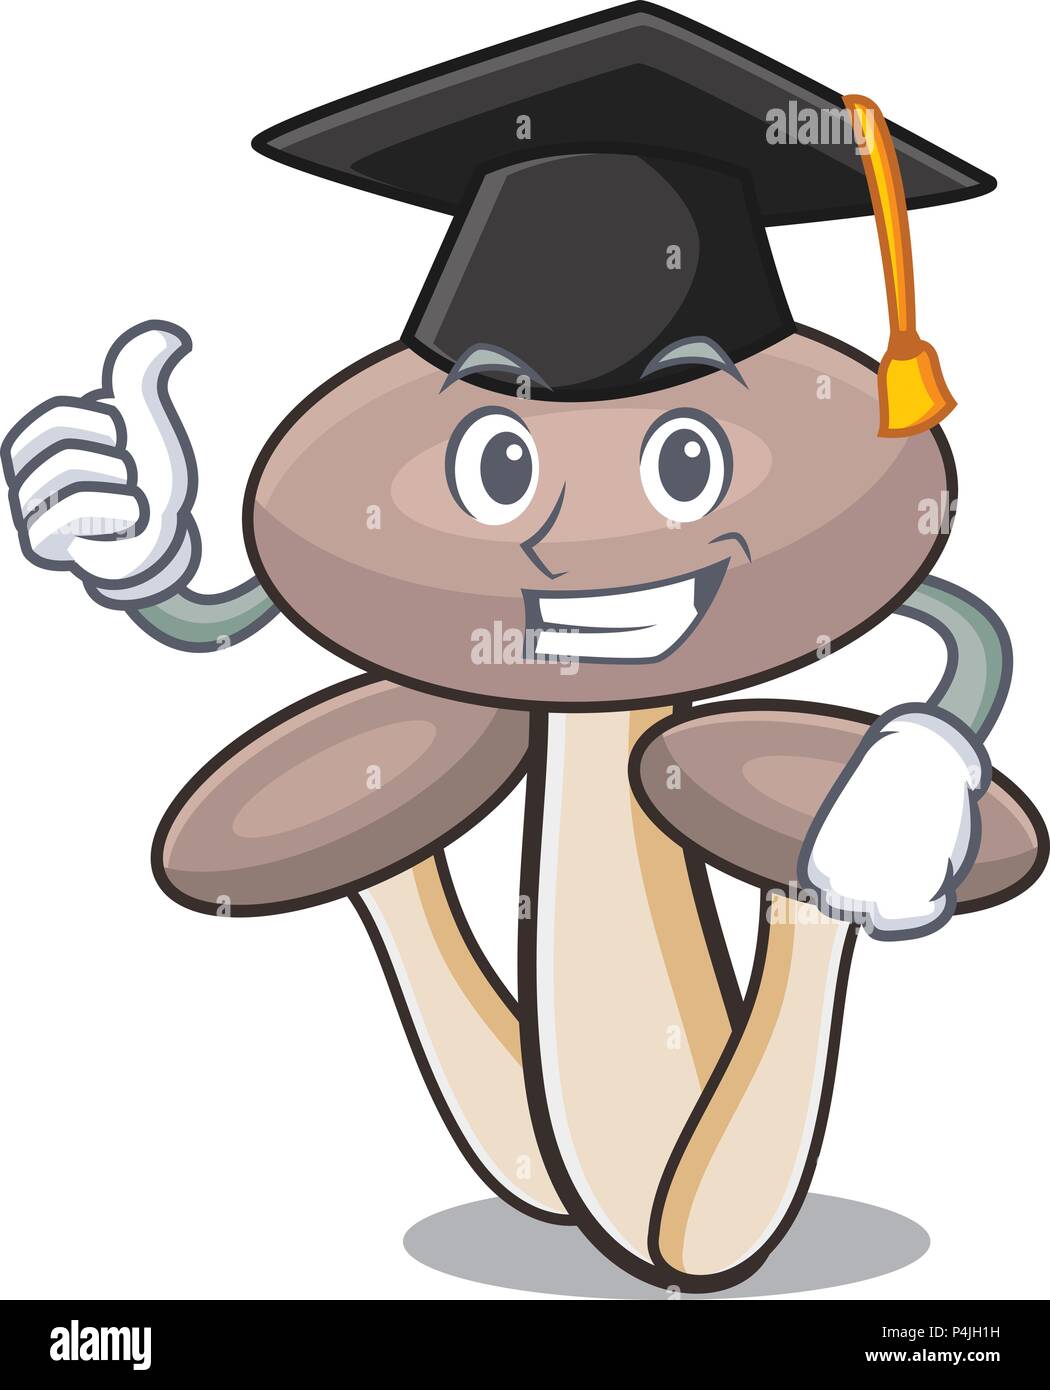 Graduation honey agaric mushroom character cartoon Stock Vector